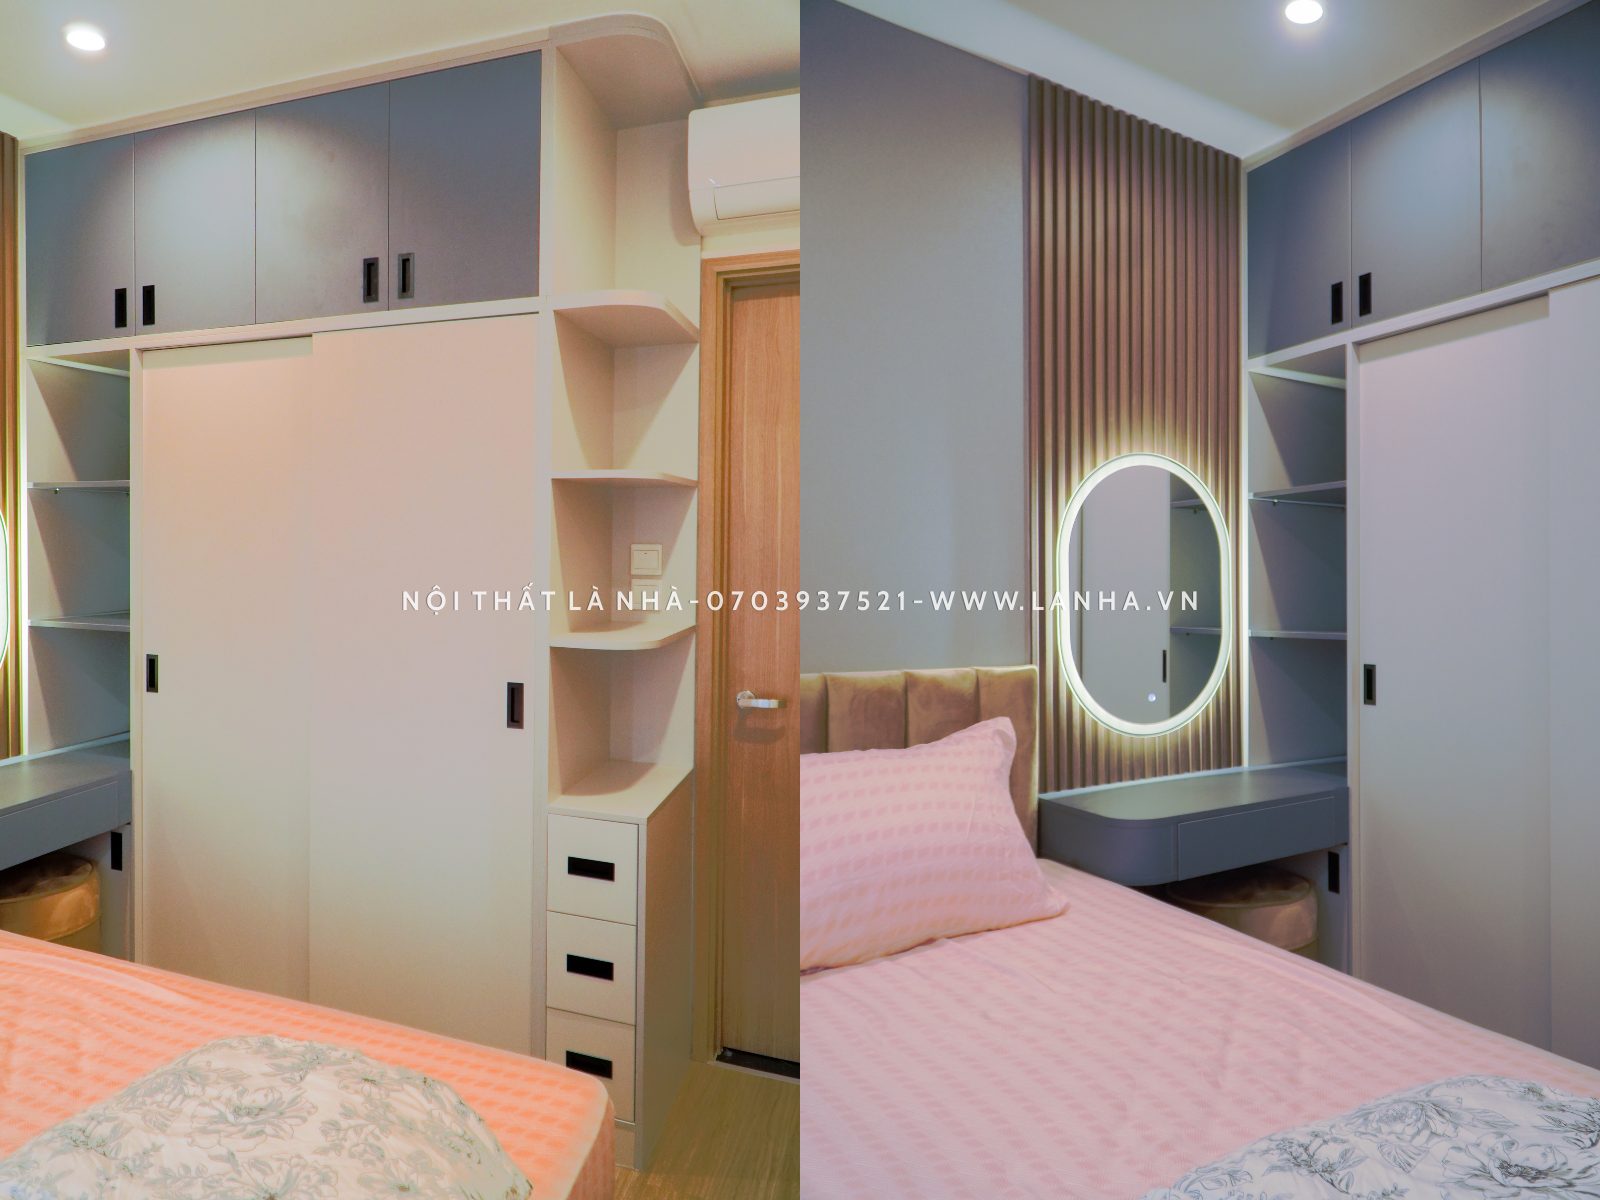 Phòng ngủ vợ chồng thiết kế hiện đại với tủ quần áo tối ưu diện tích